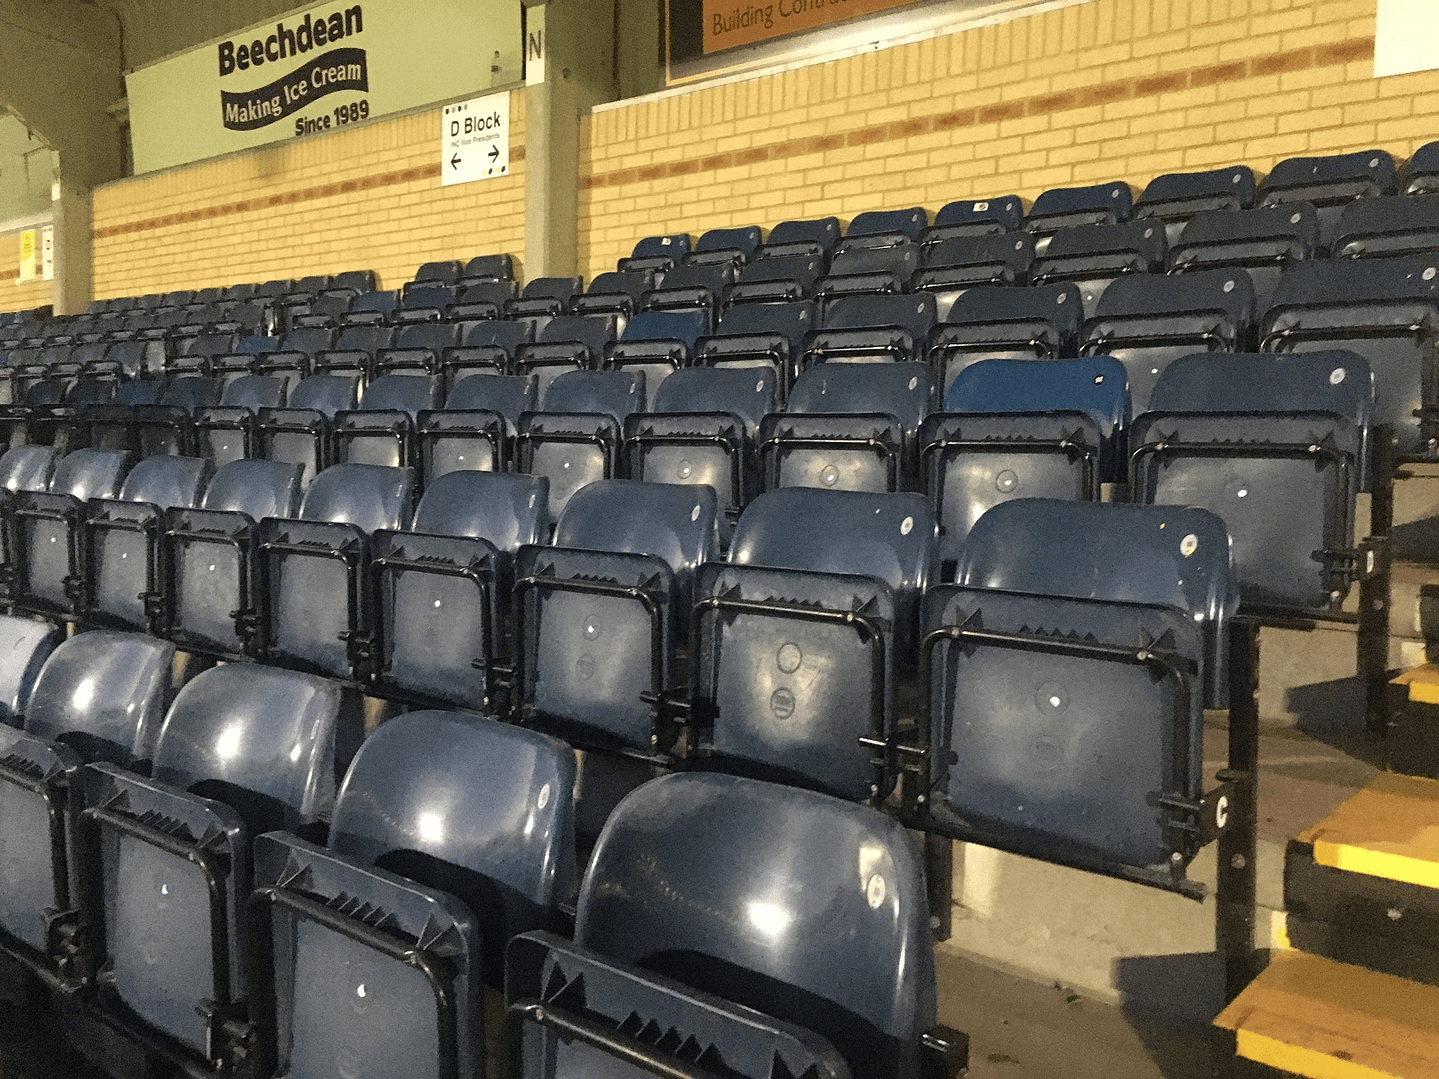 Football stadium seats empty due to covid